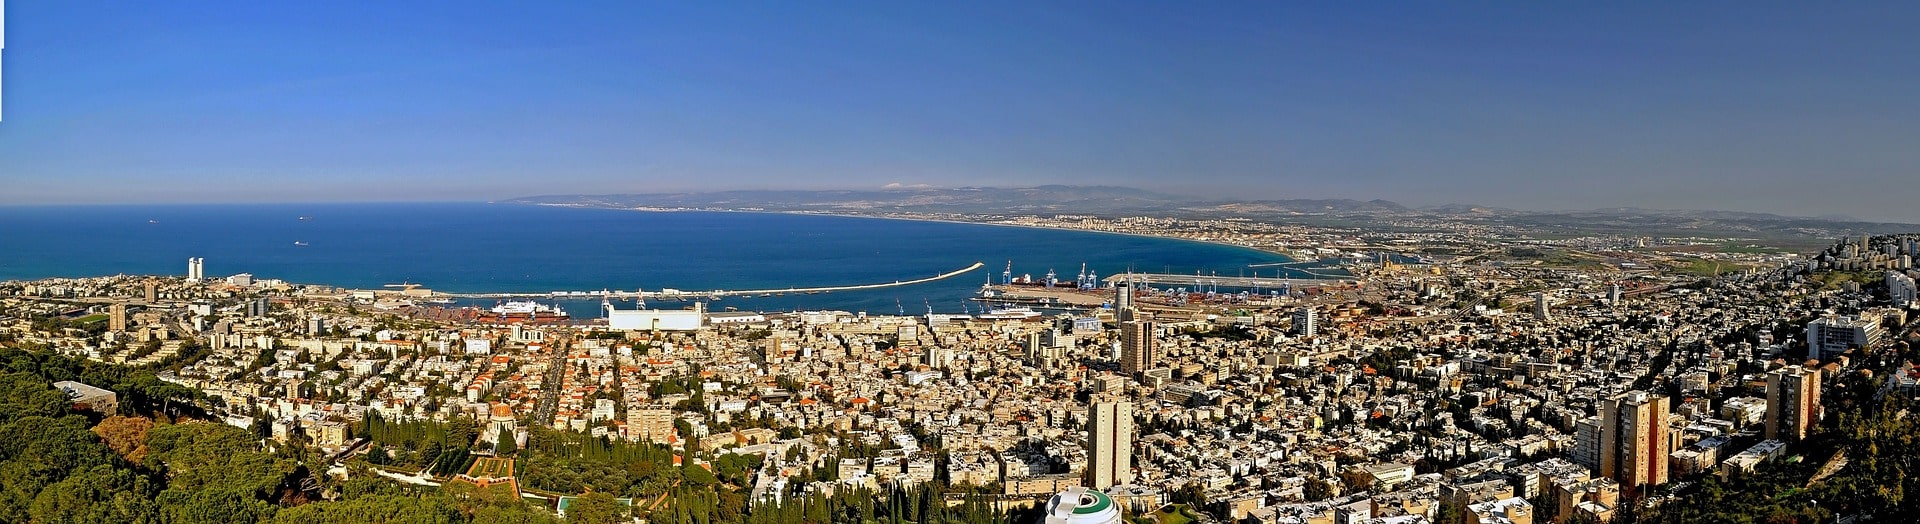 לראשונה במפרץ חיפה: ועידת המפרץ לאזוריות 2022